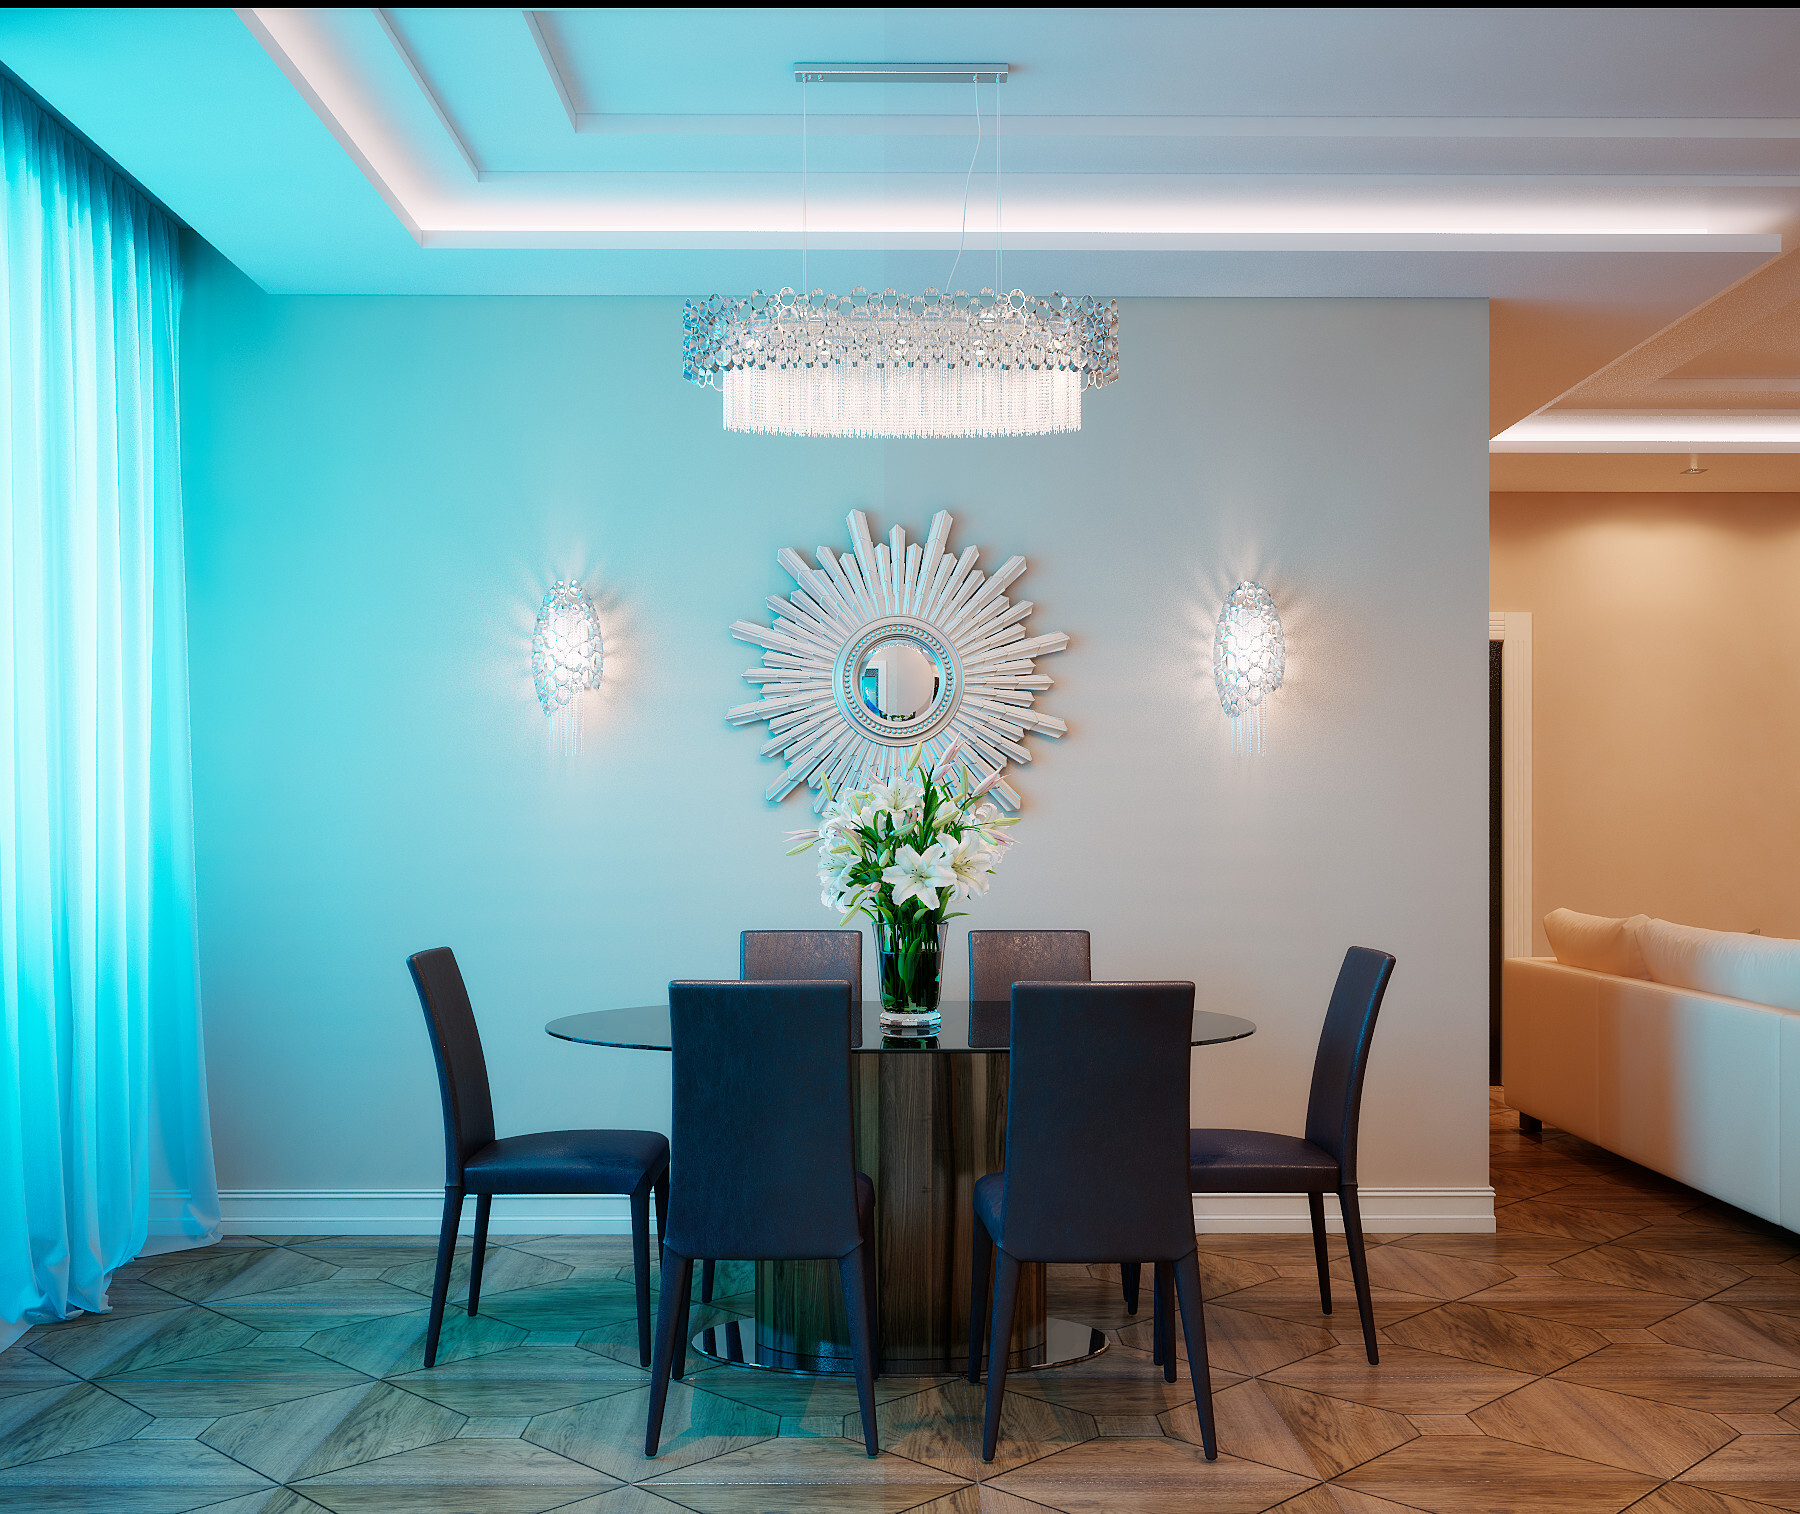 Интерьер столовой cветовыми линиями, рейками с подсветкой, подсветкой настенной, подсветкой светодиодной и с подсветкой